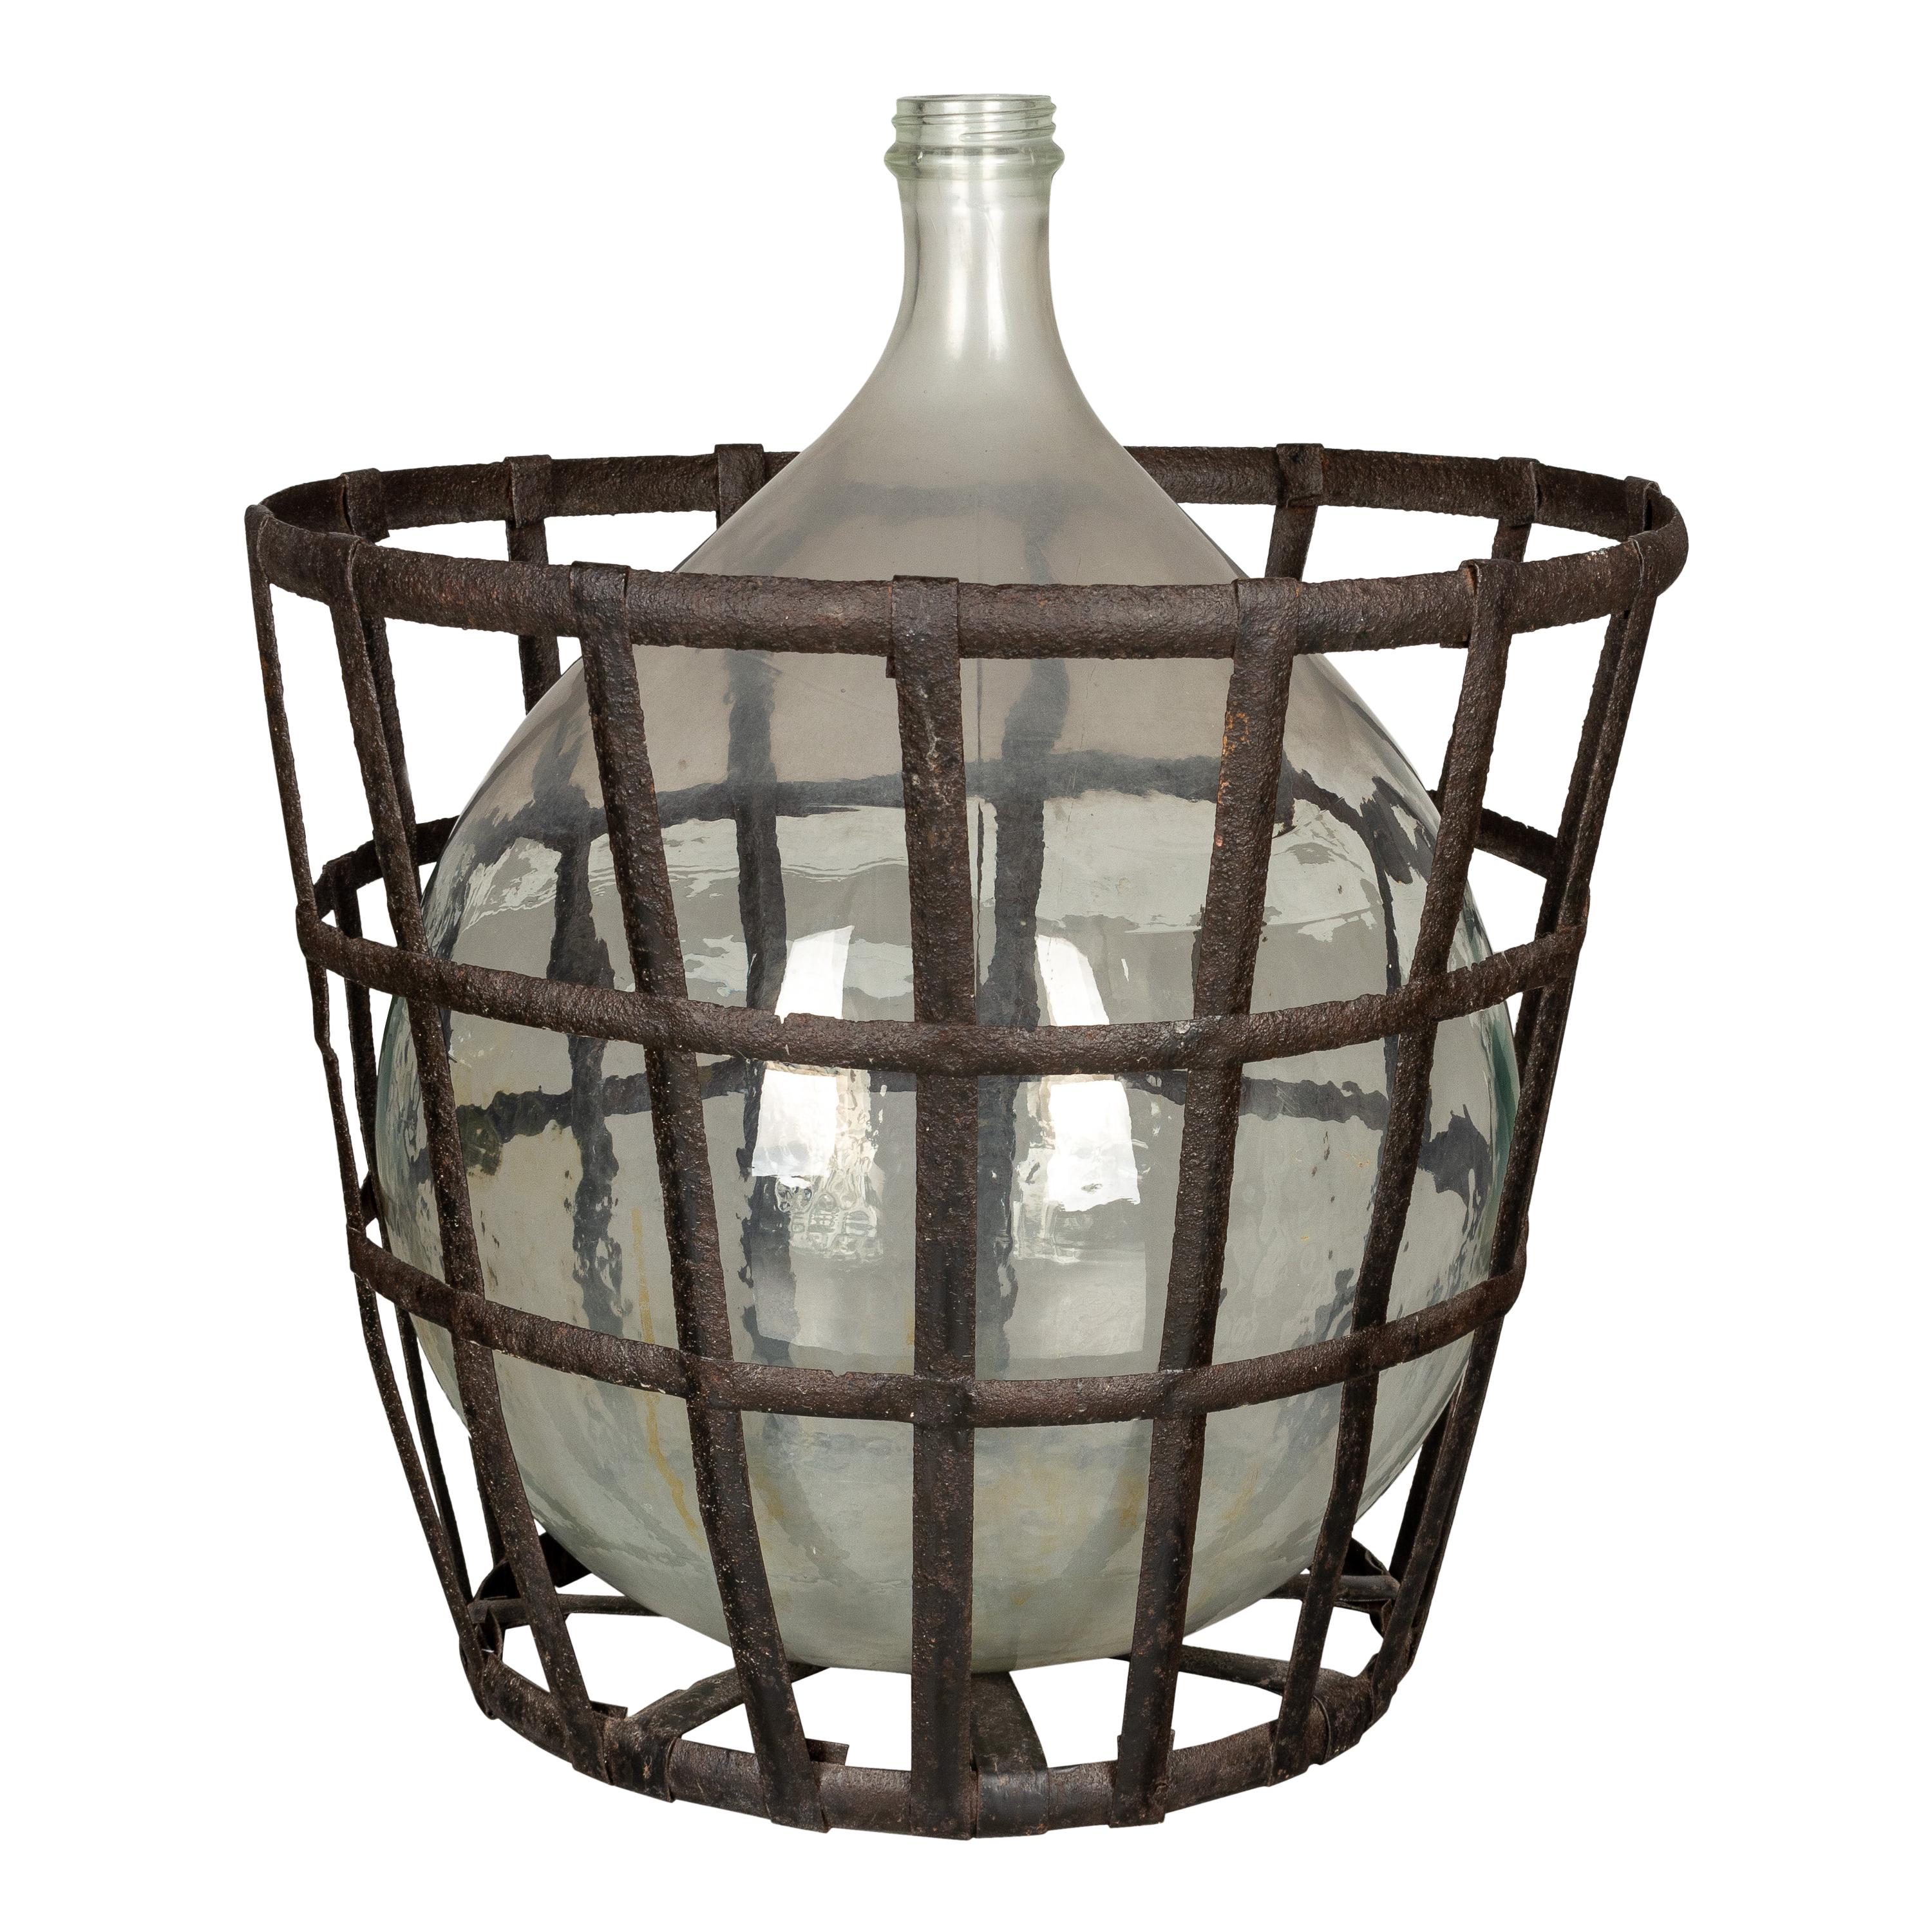 French Glass Demijohn Bottle in Metal Basket